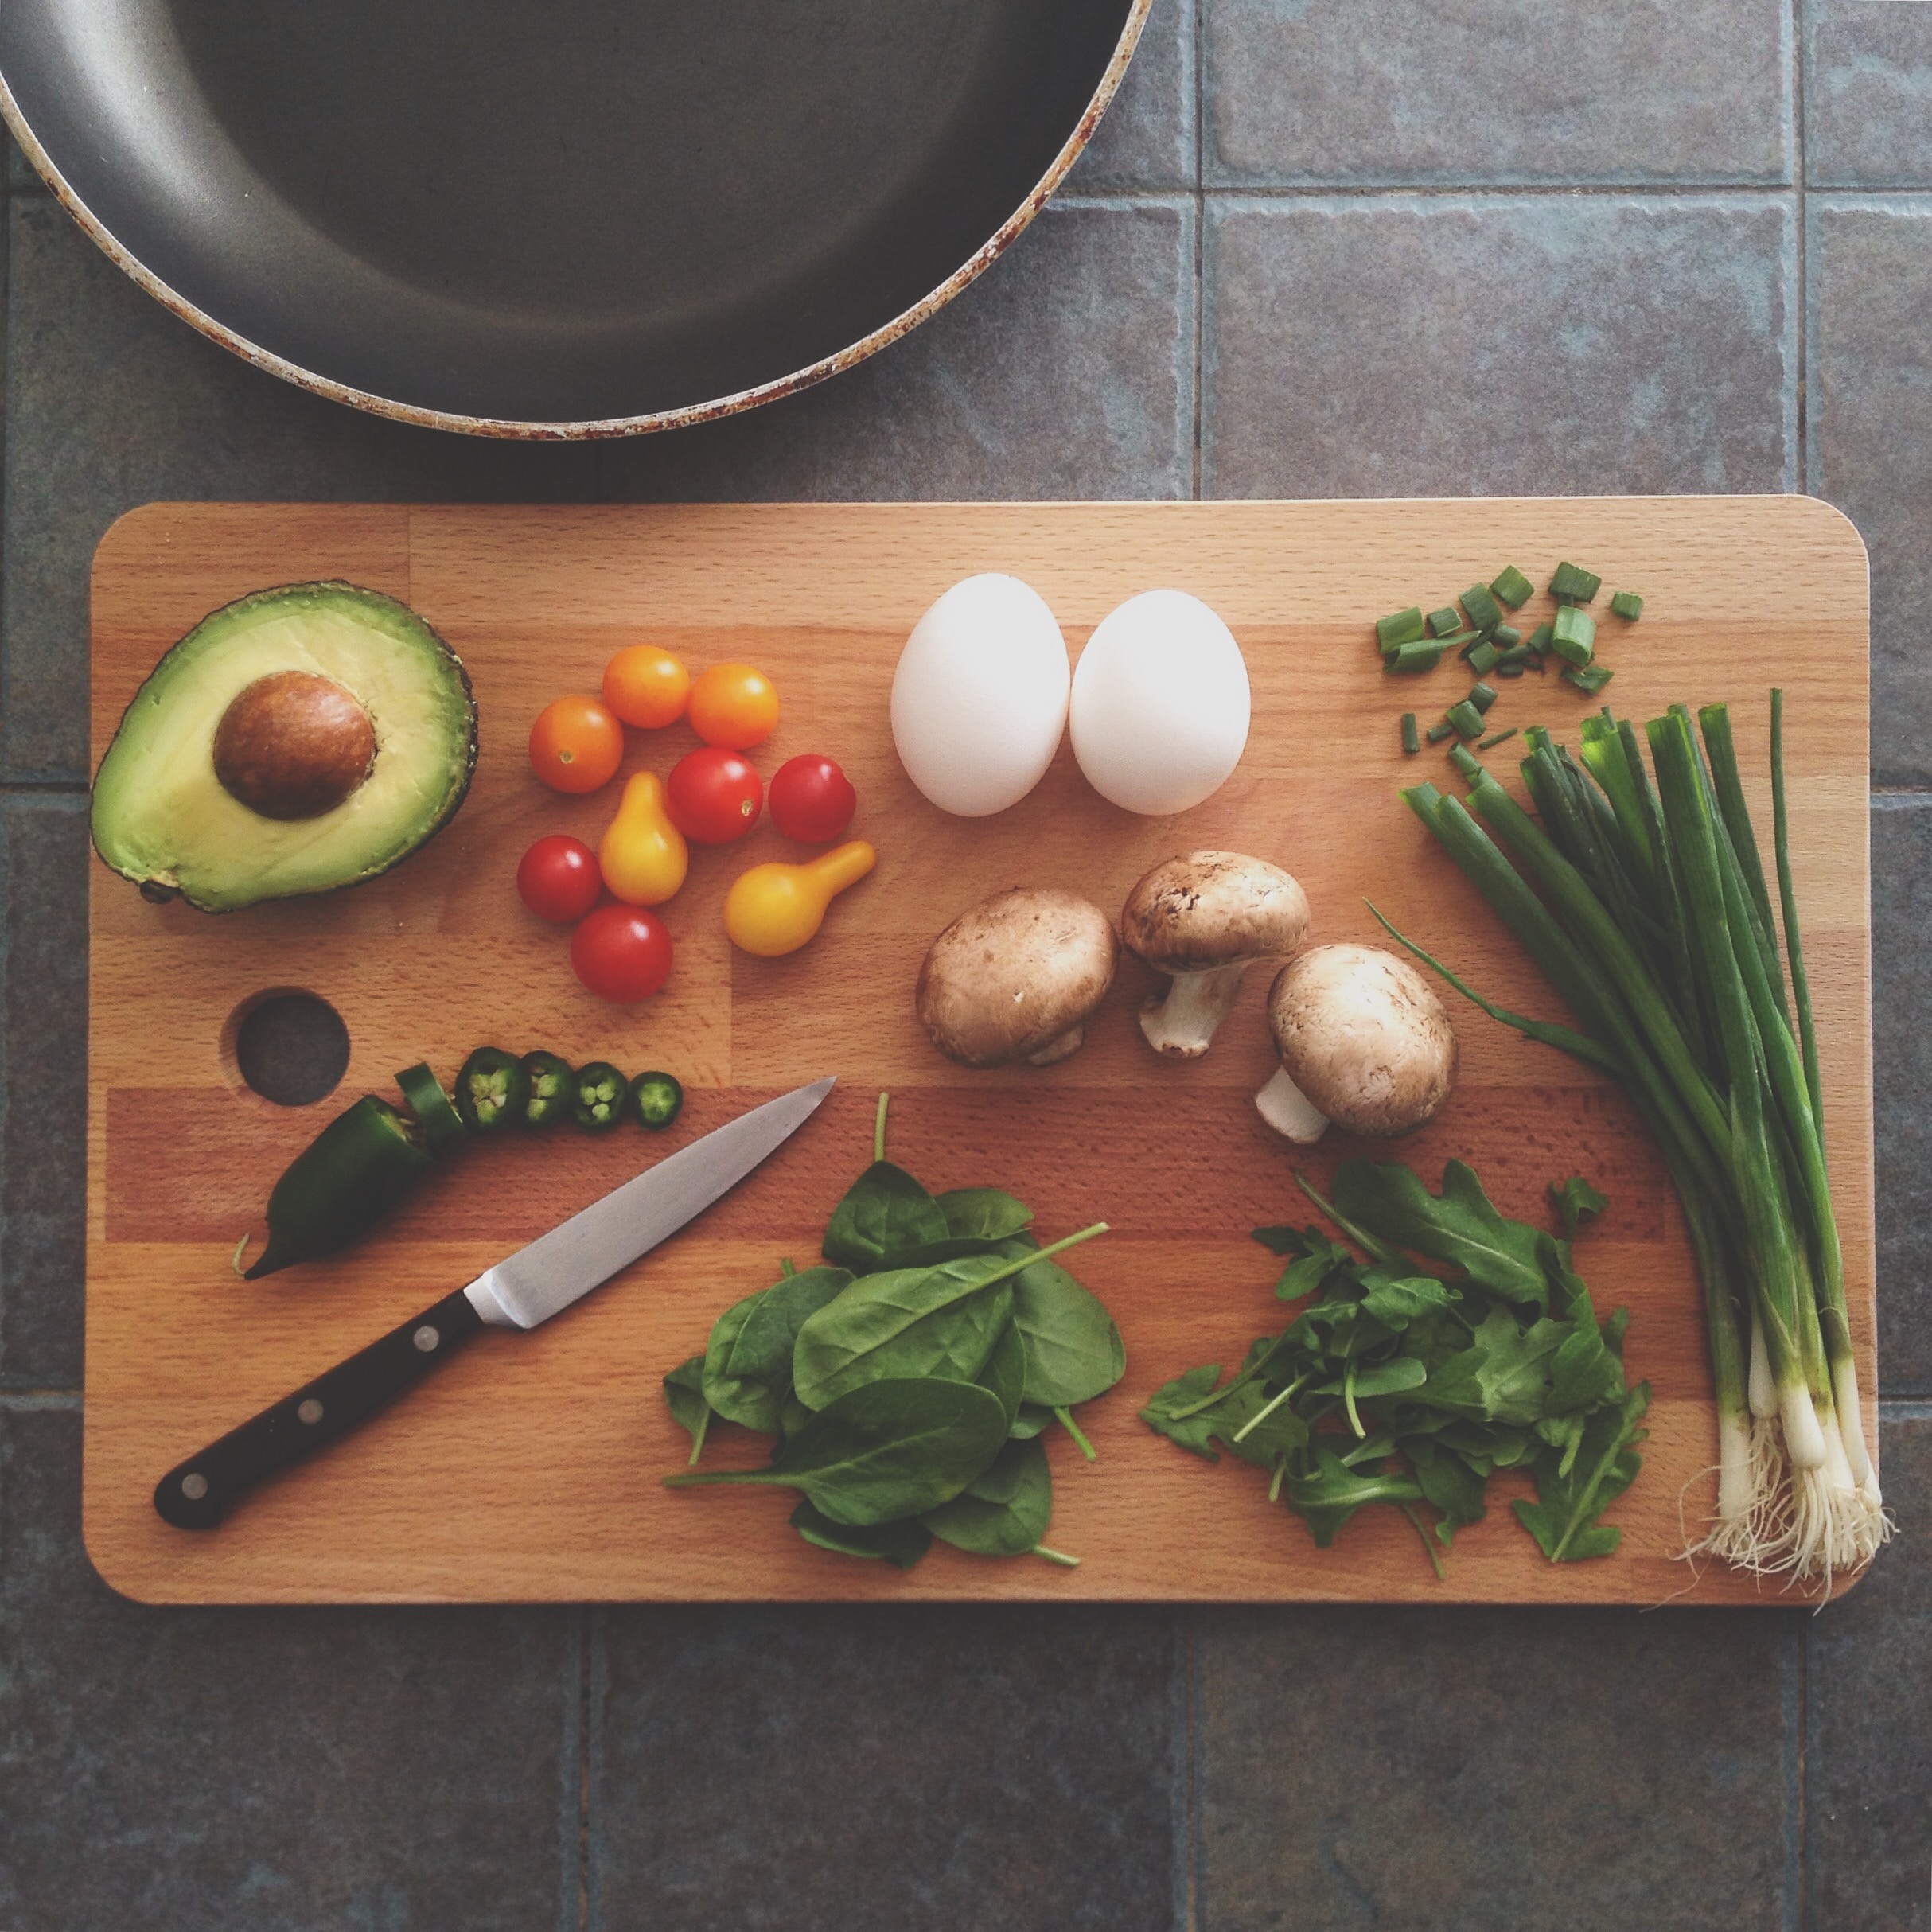 Vooroordeel Meenemen boekje 5 redenen waarom koken leuker is dan eten bestellen | Marley Spoon Blog